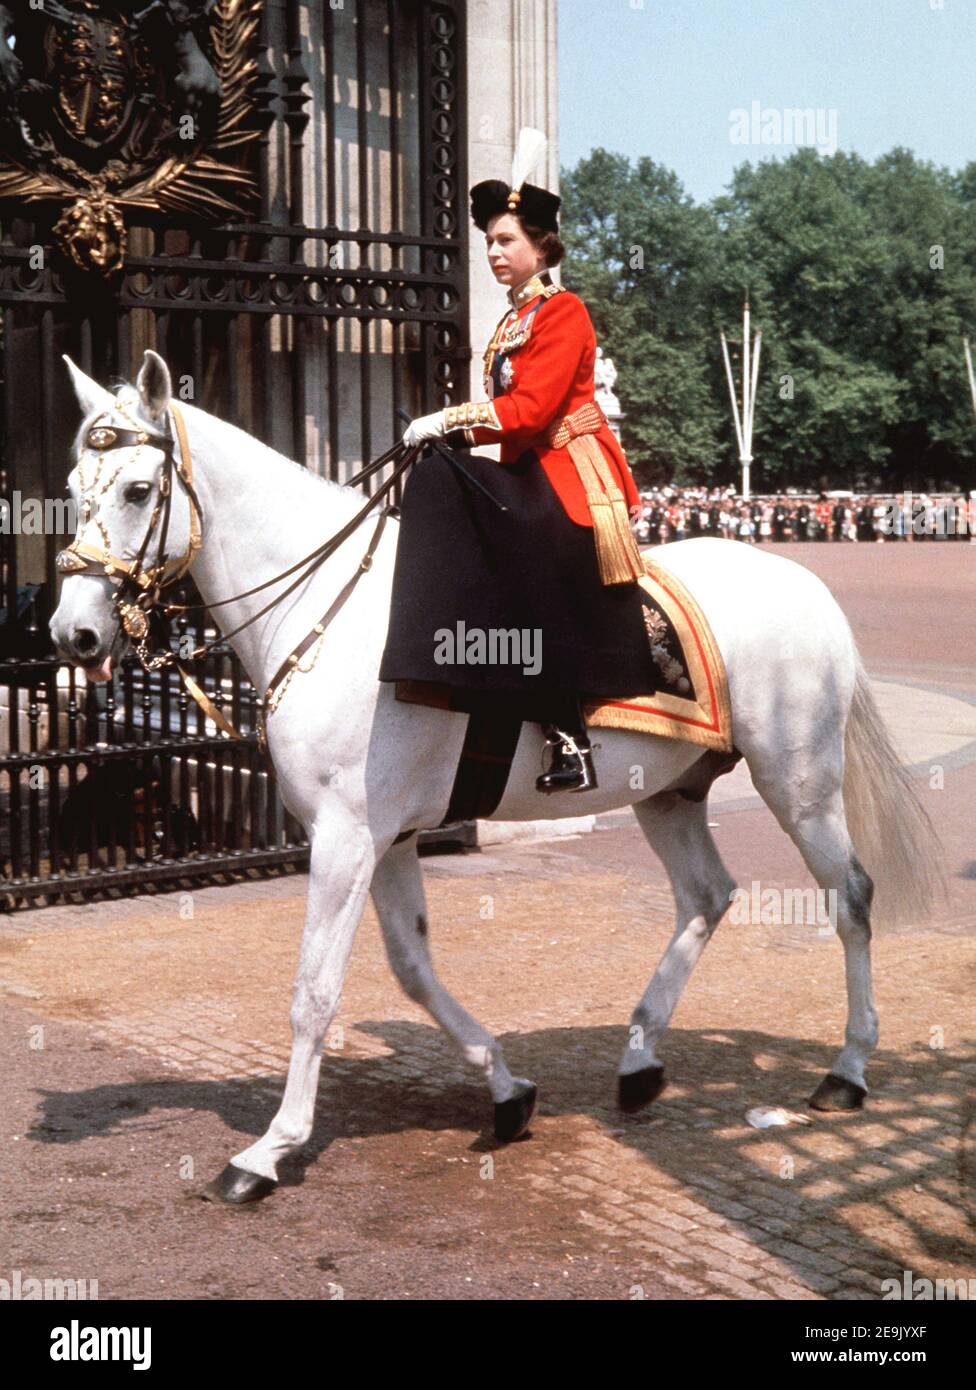 Foto del archivo fechada el 08/06/63 de la reina Isabel II montando silla  de montar mientras ella regresaba al Palacio de Buckingham, Londres,  después de asistir a la ceremonia de Trooping the